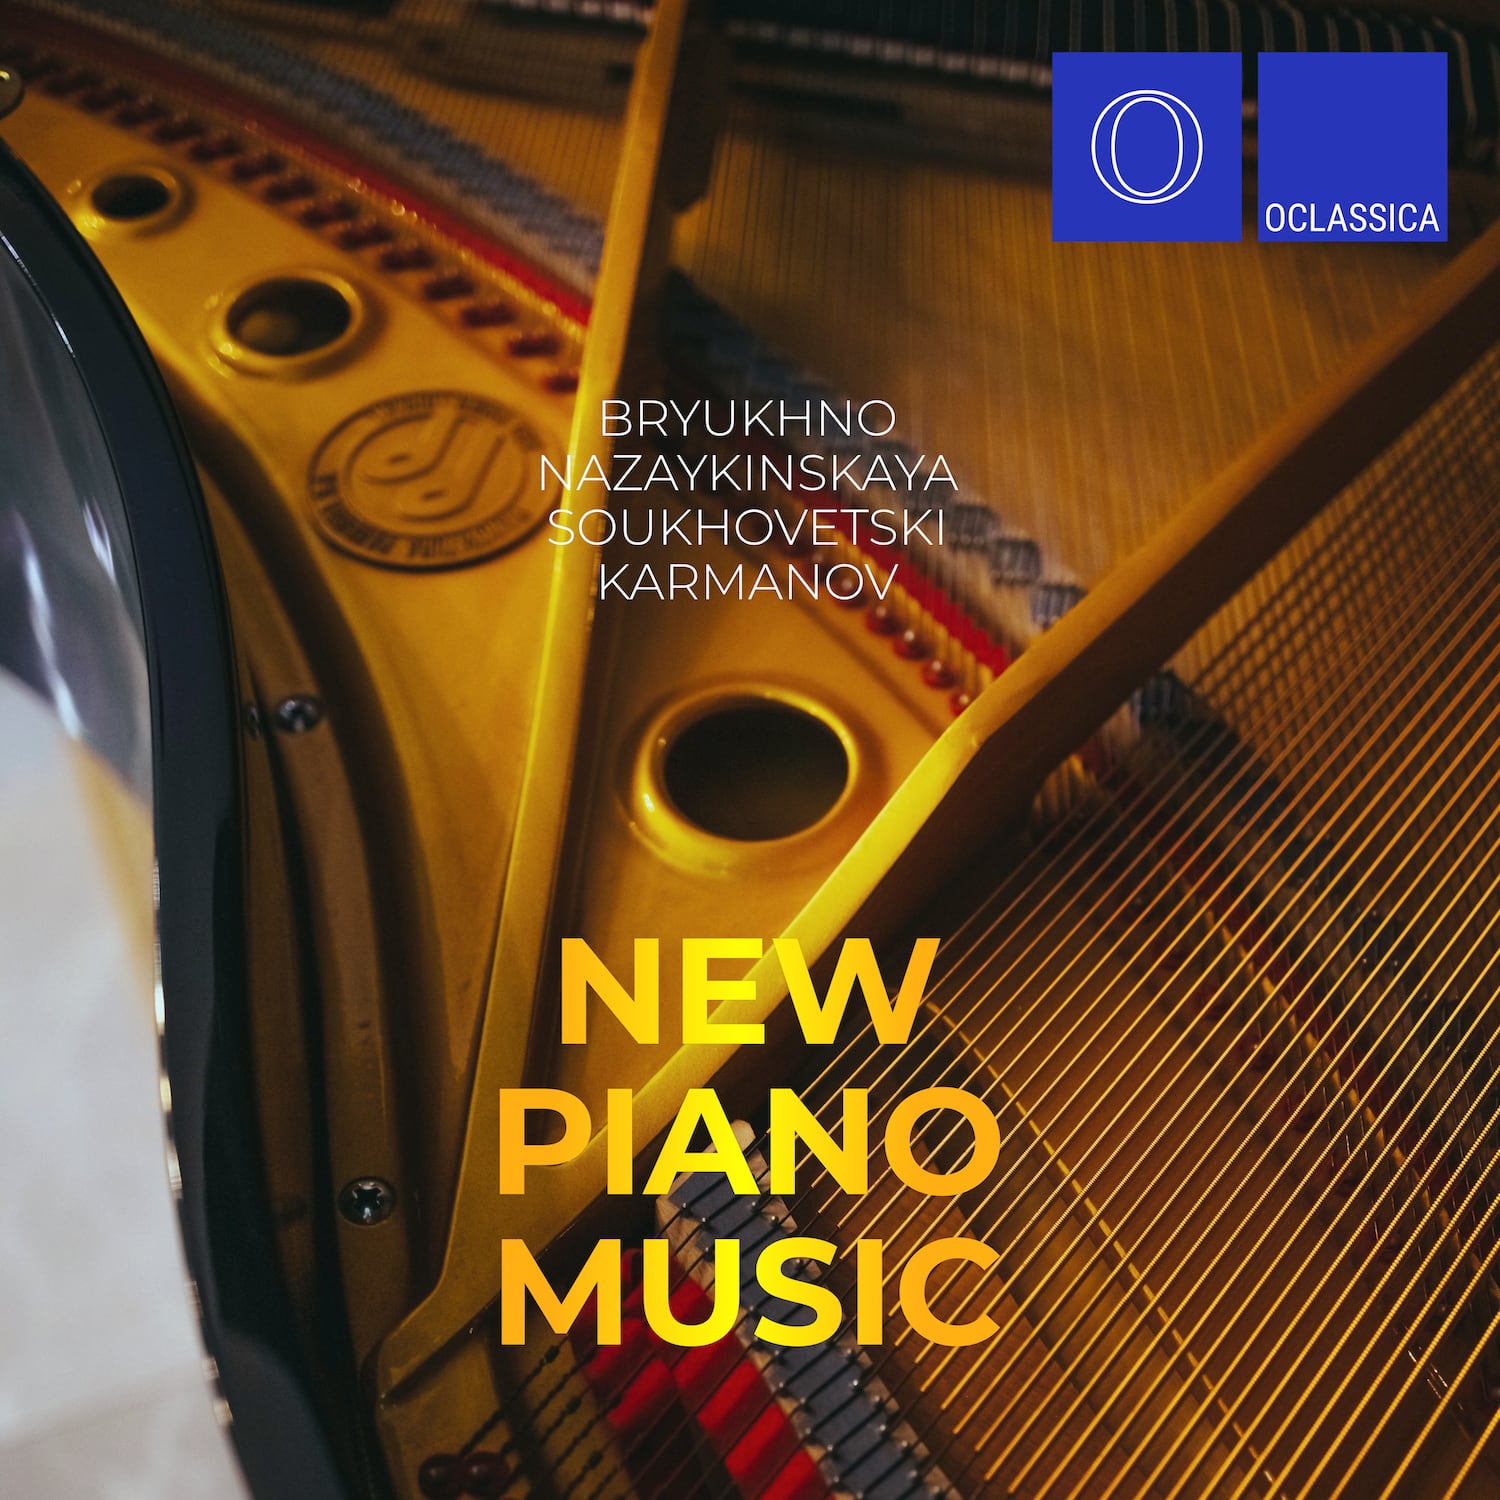 Bryukhno, Nazaykinskaya, Soukhovetski, Karmanov: New Piano Music